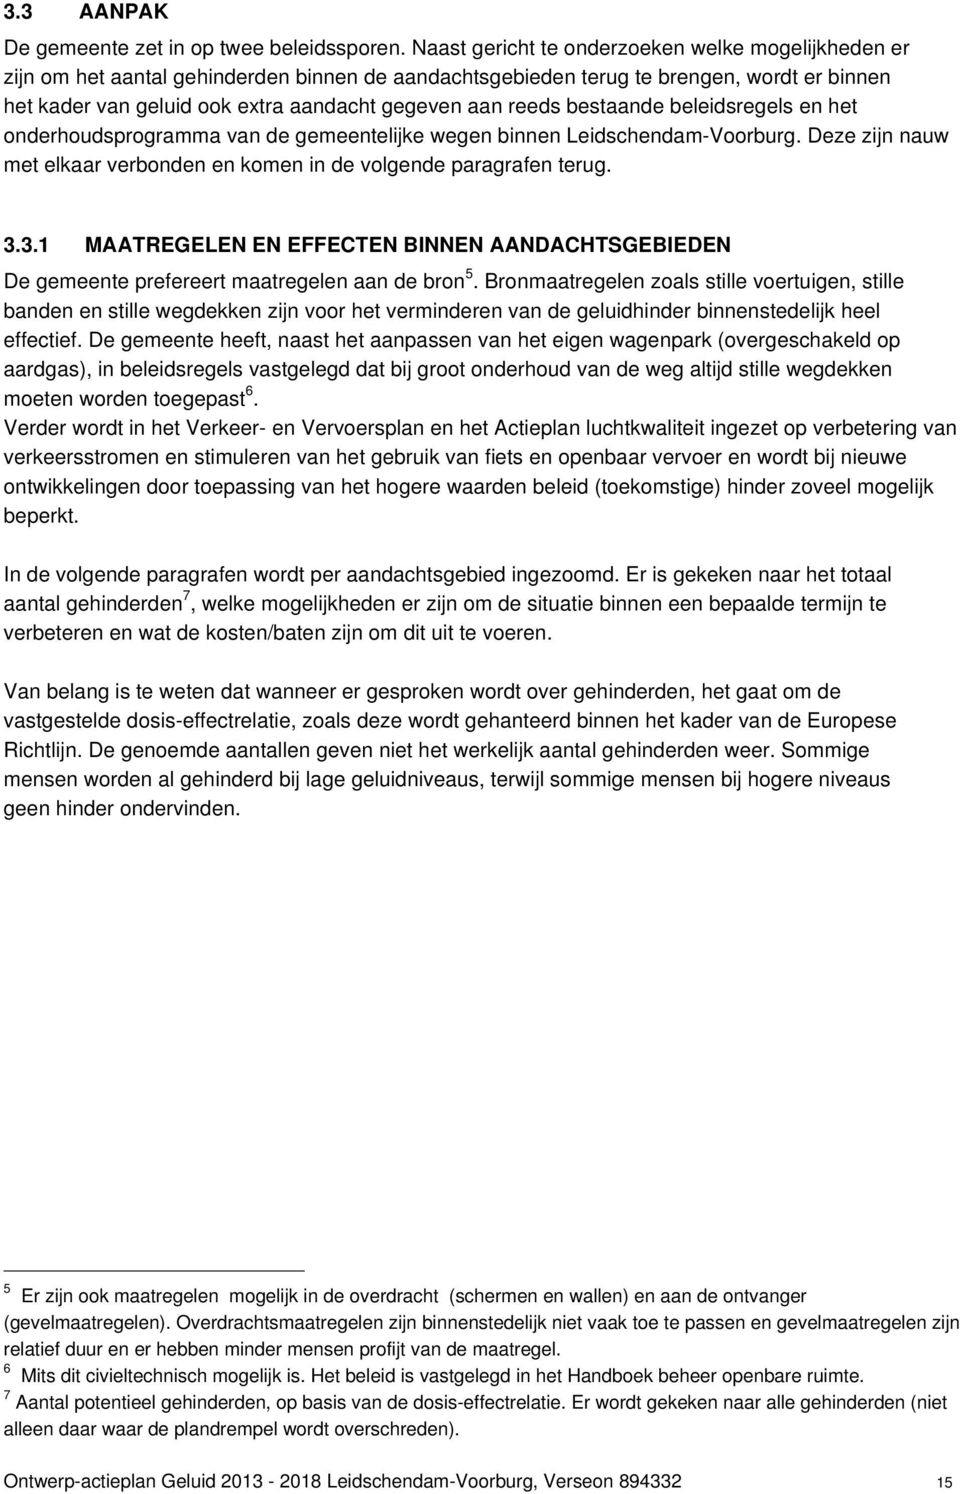 reeds bestaande beleidsregels en het onderhoudsprogramma van de gemeentelijke wegen binnen Leidschendam-Voorburg. Deze zijn nauw met elkaar verbonden en komen in de volgende paragrafen terug. 3.